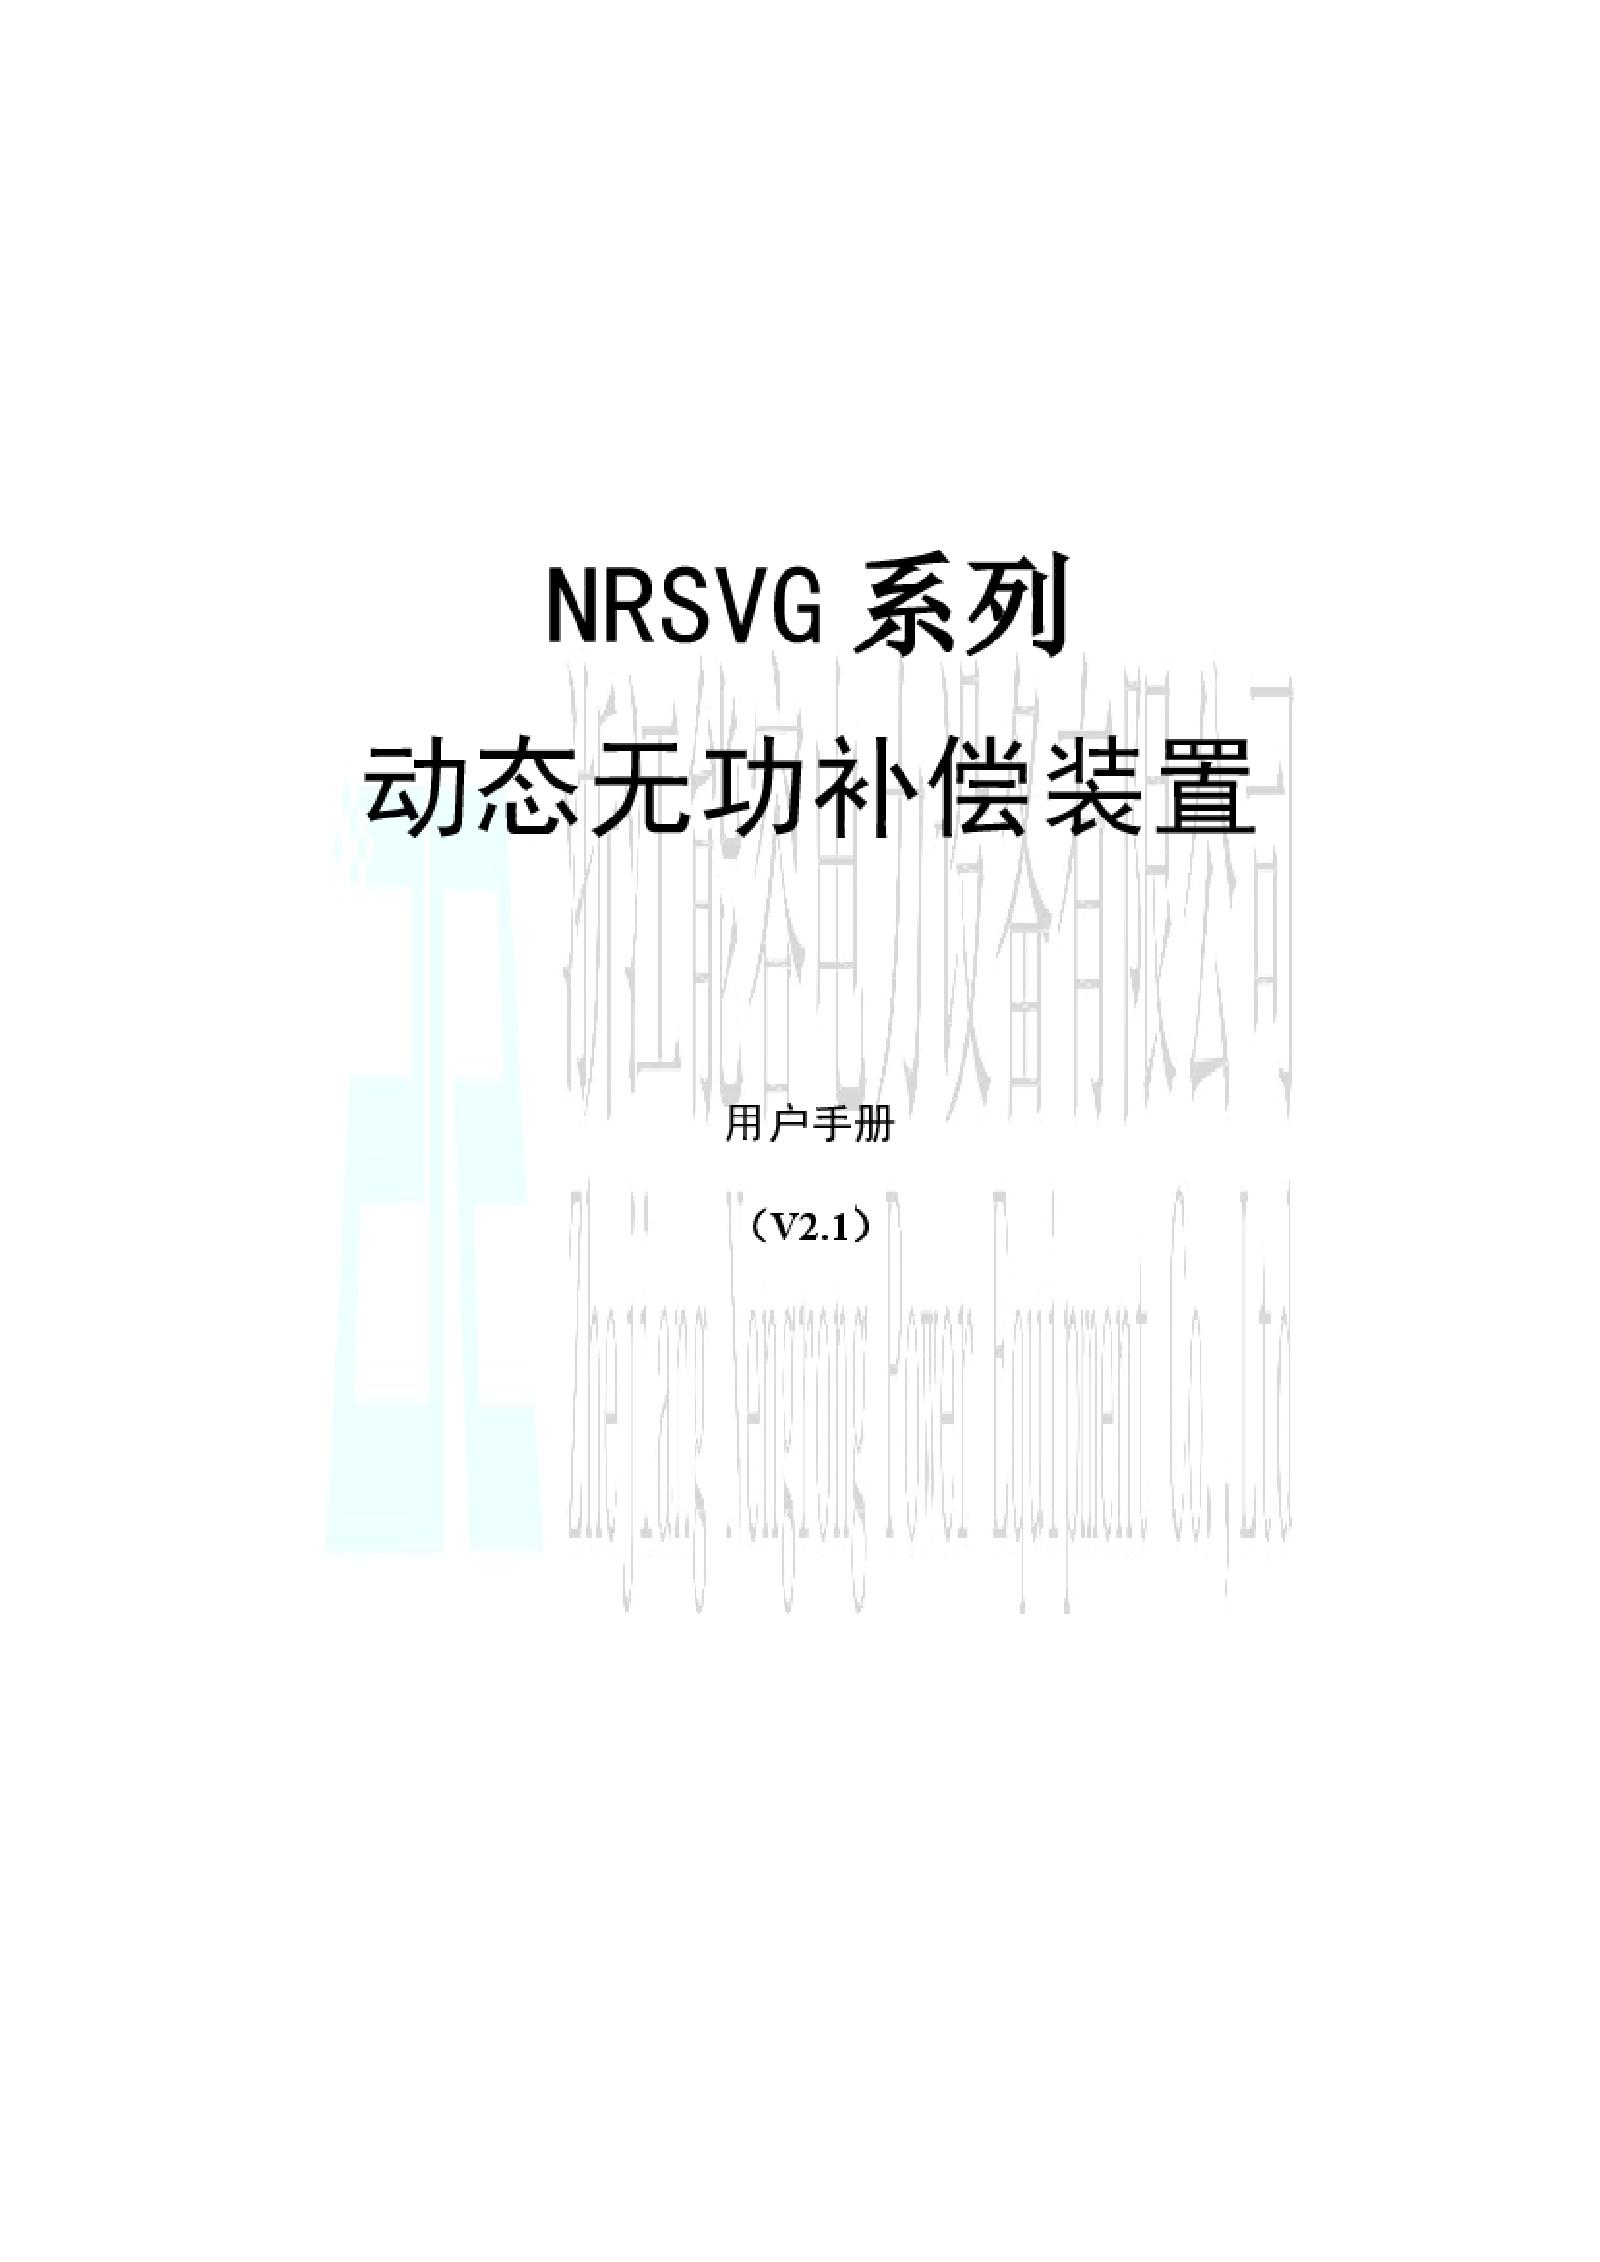 高压动态无功补偿成套装置NRSVG